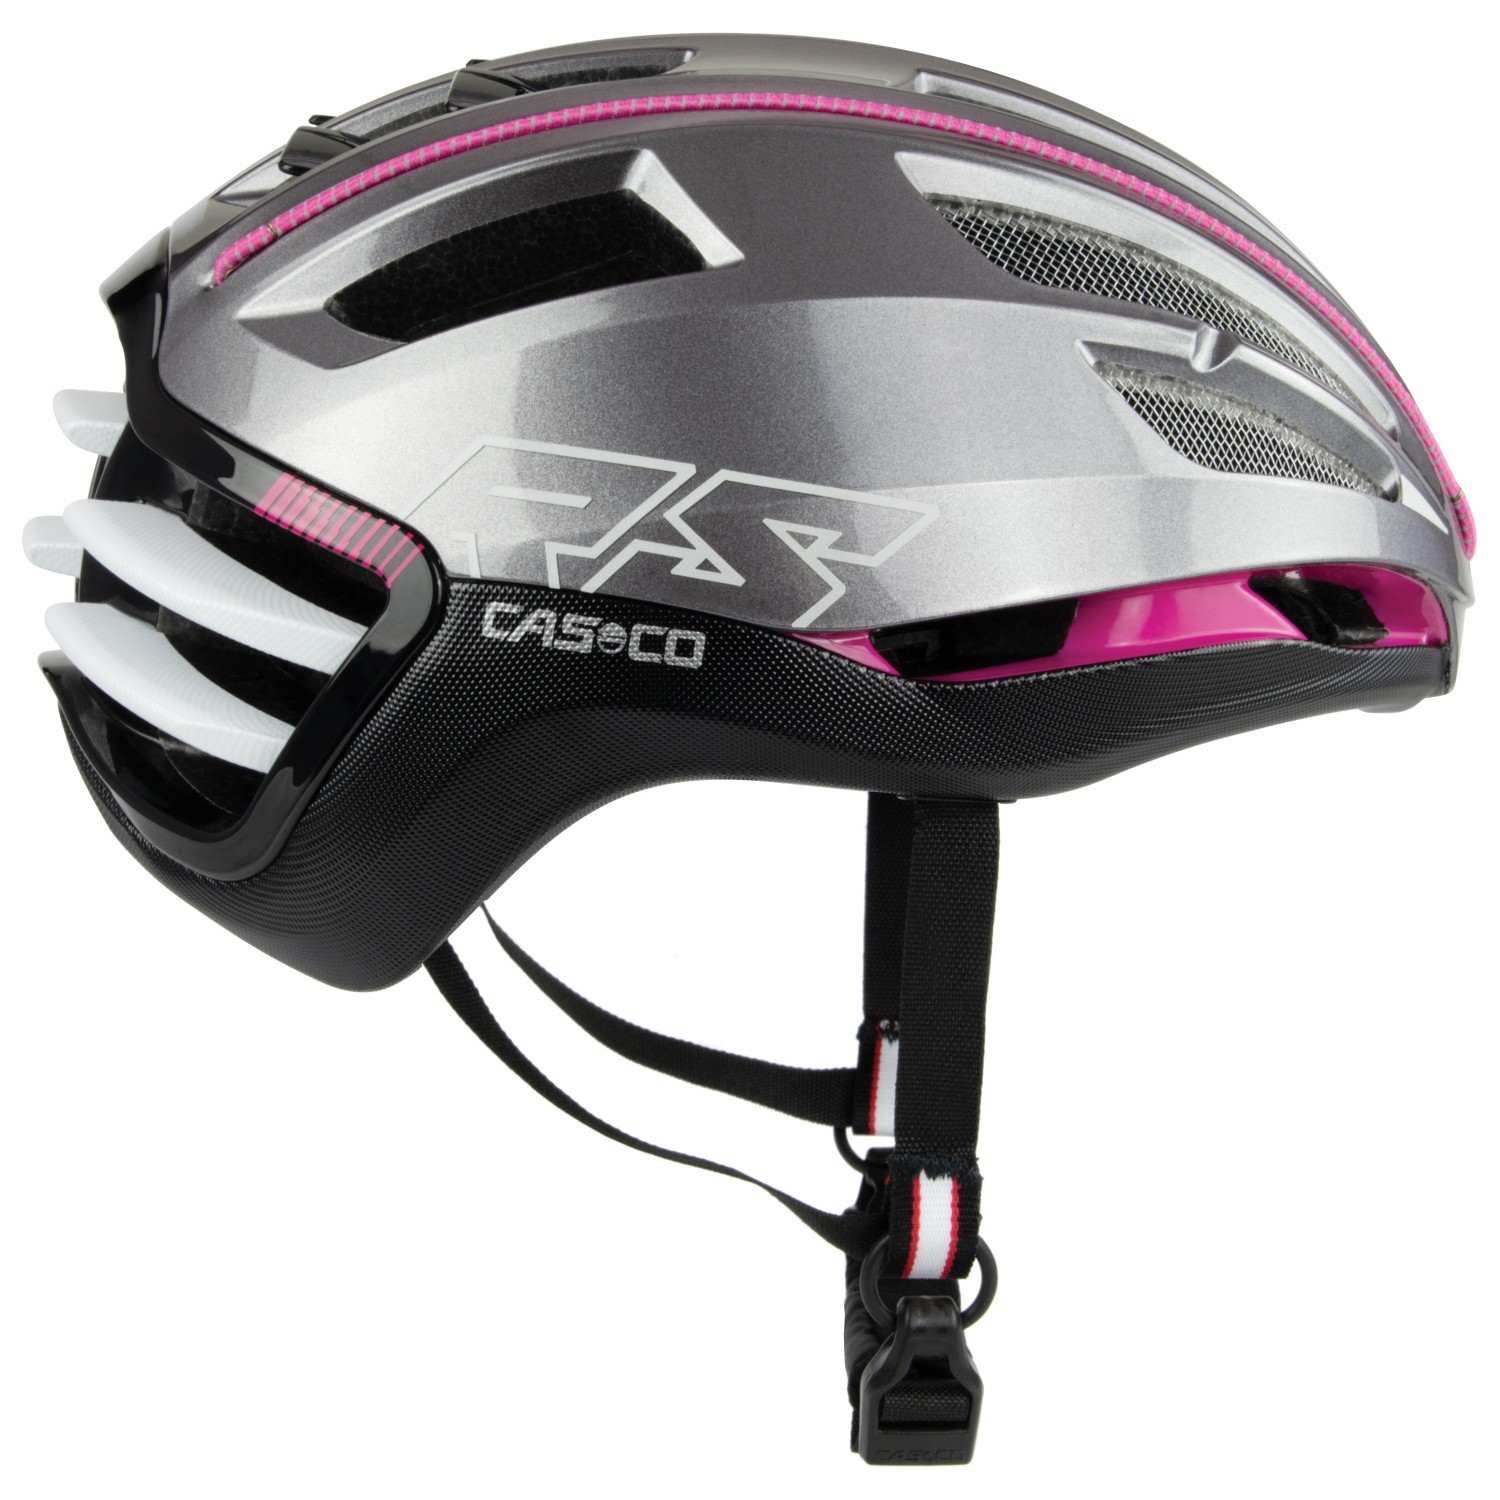 Велосипедный шлем Casco Speedairo2, цвет Grey/Pink козырек на шлем для мотоциклетного шлема k5 k5s k3sv k1 защита от царапин мотоциклетные аксессуары очки casco moto